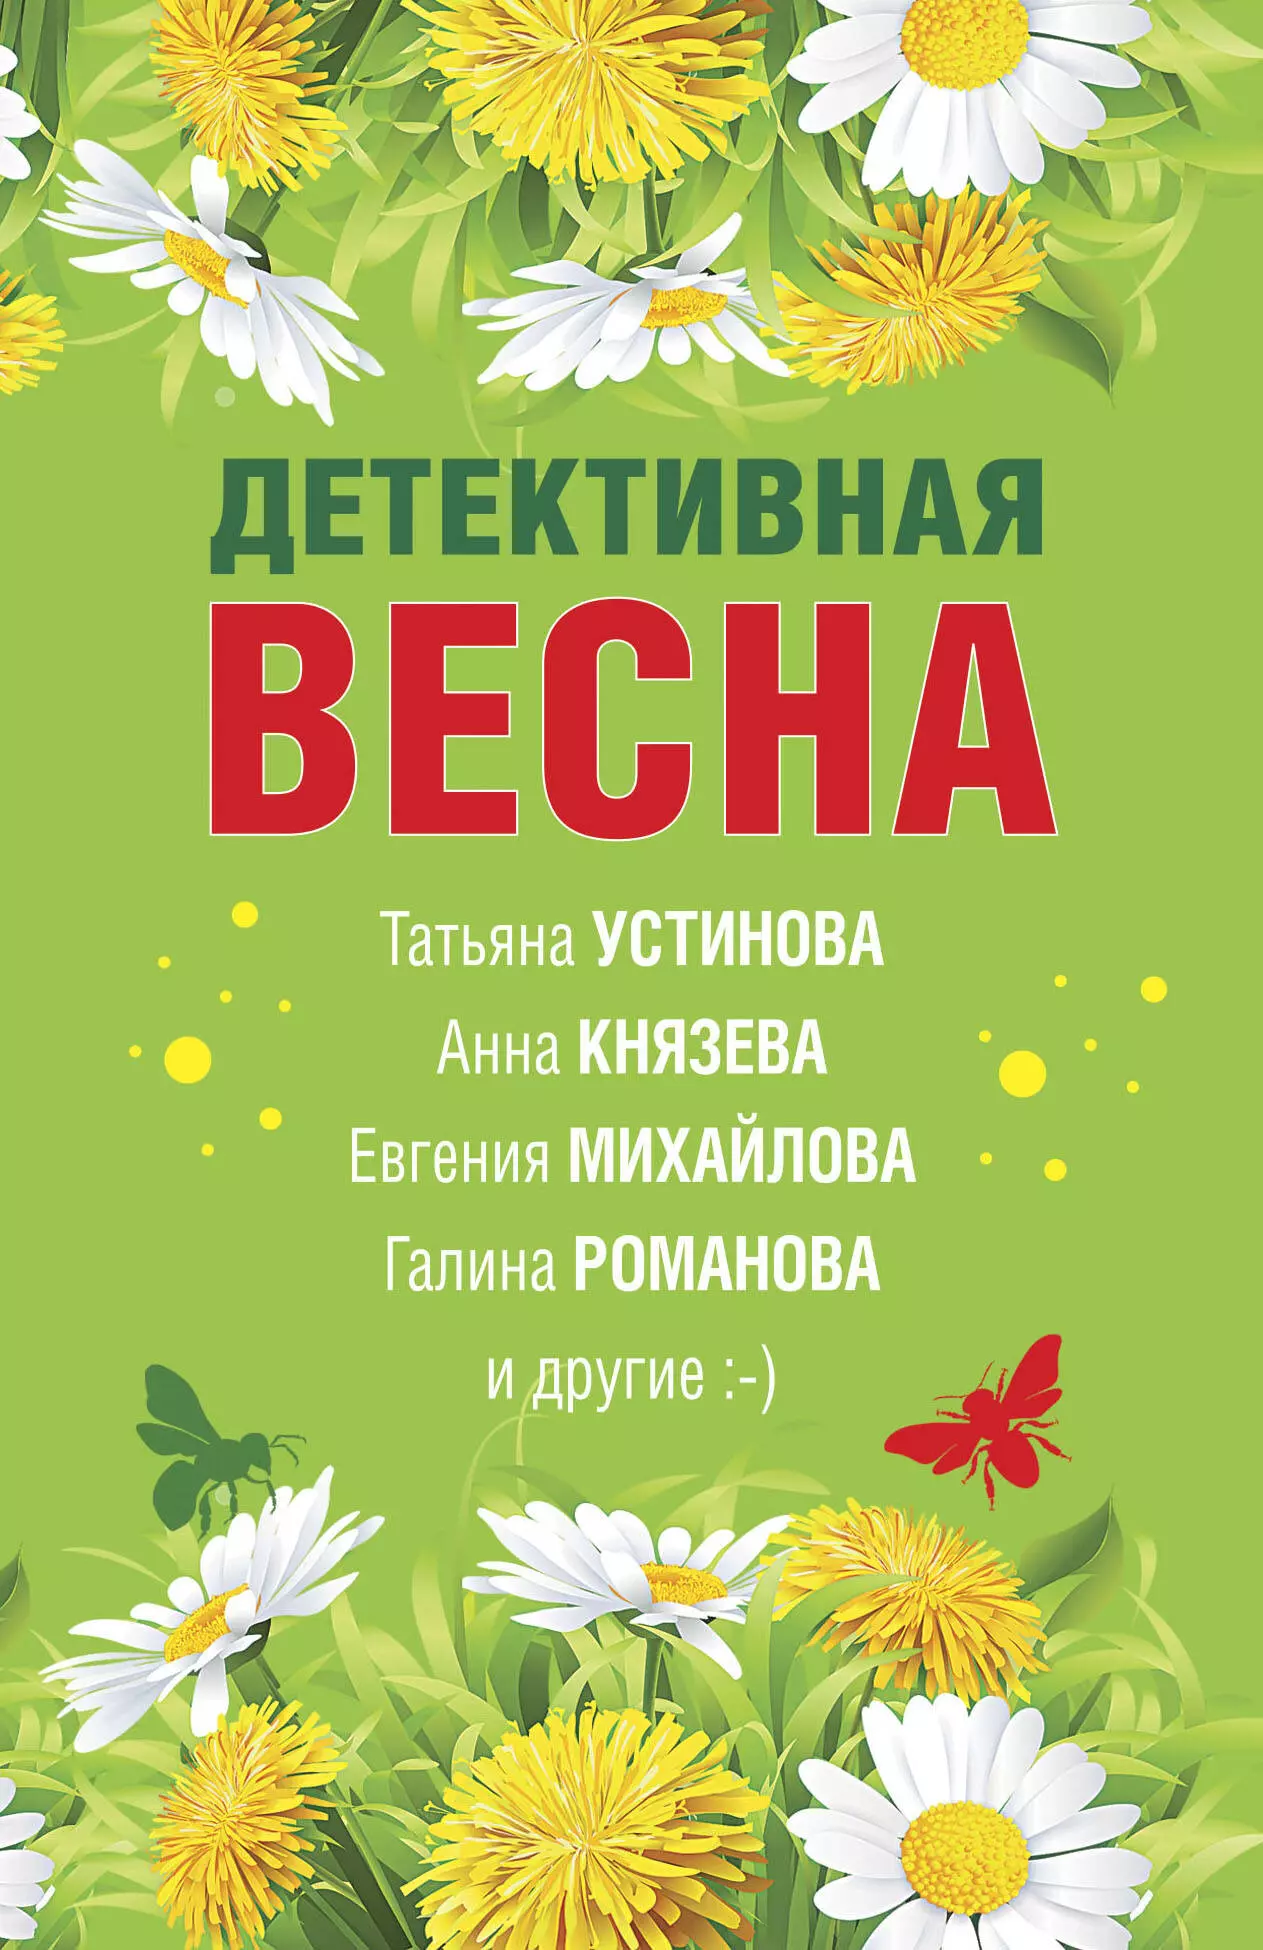 Устинова Татьяна Витальевна - Детективная весна